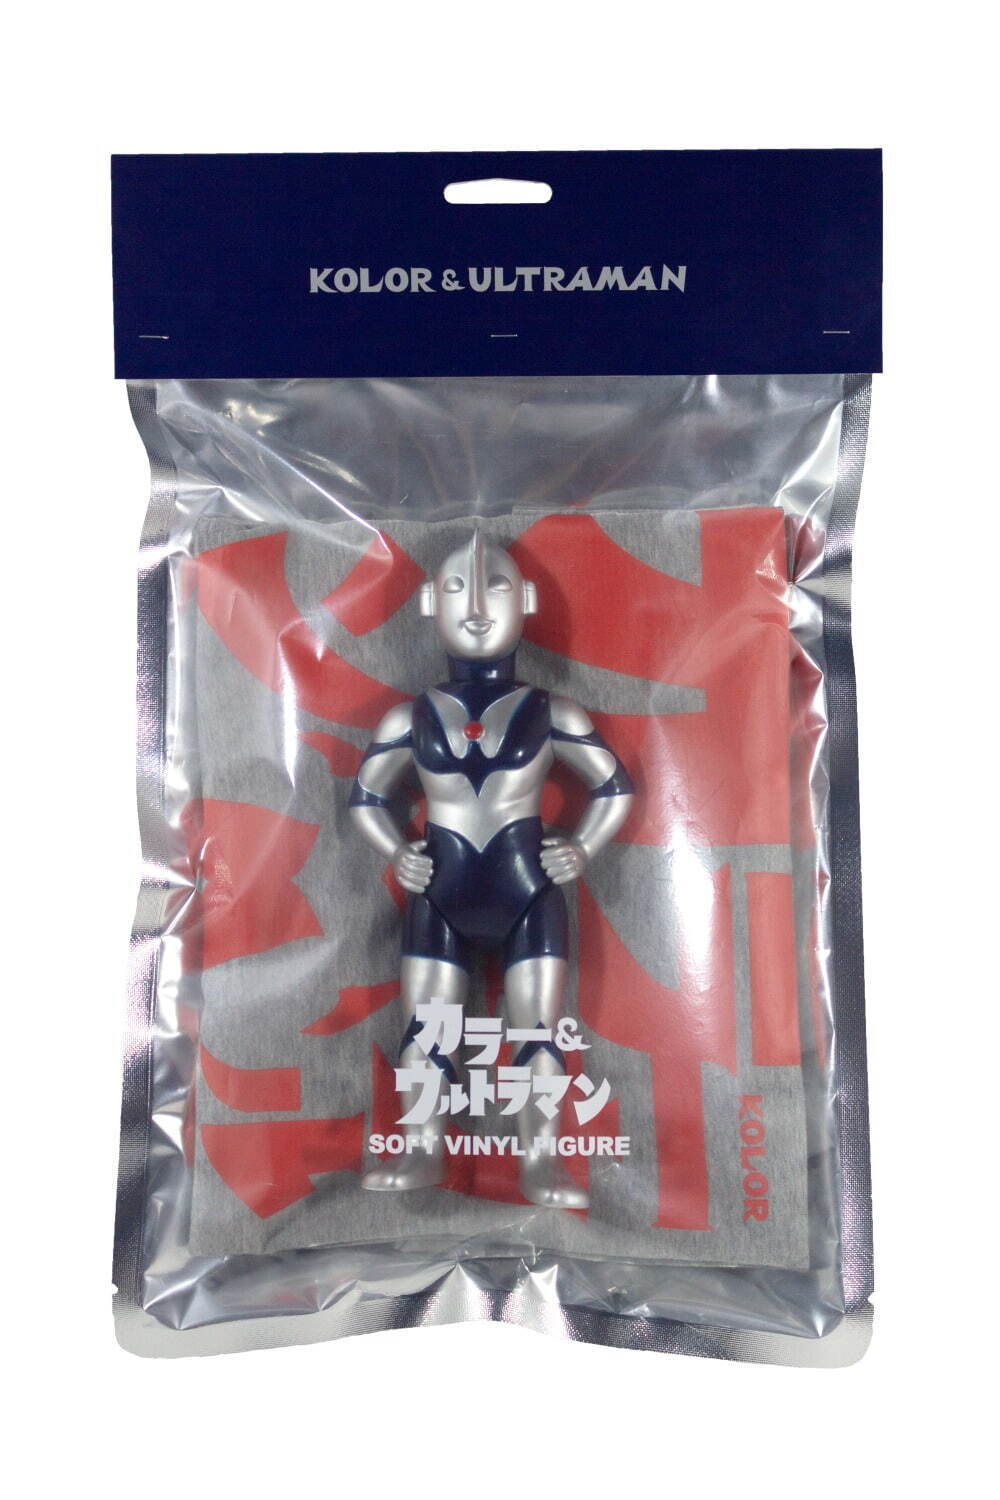 ウルトラマン350 ロゴ Tee セット / カラー & ウルトラマン ver.(数量限定)
30,000円